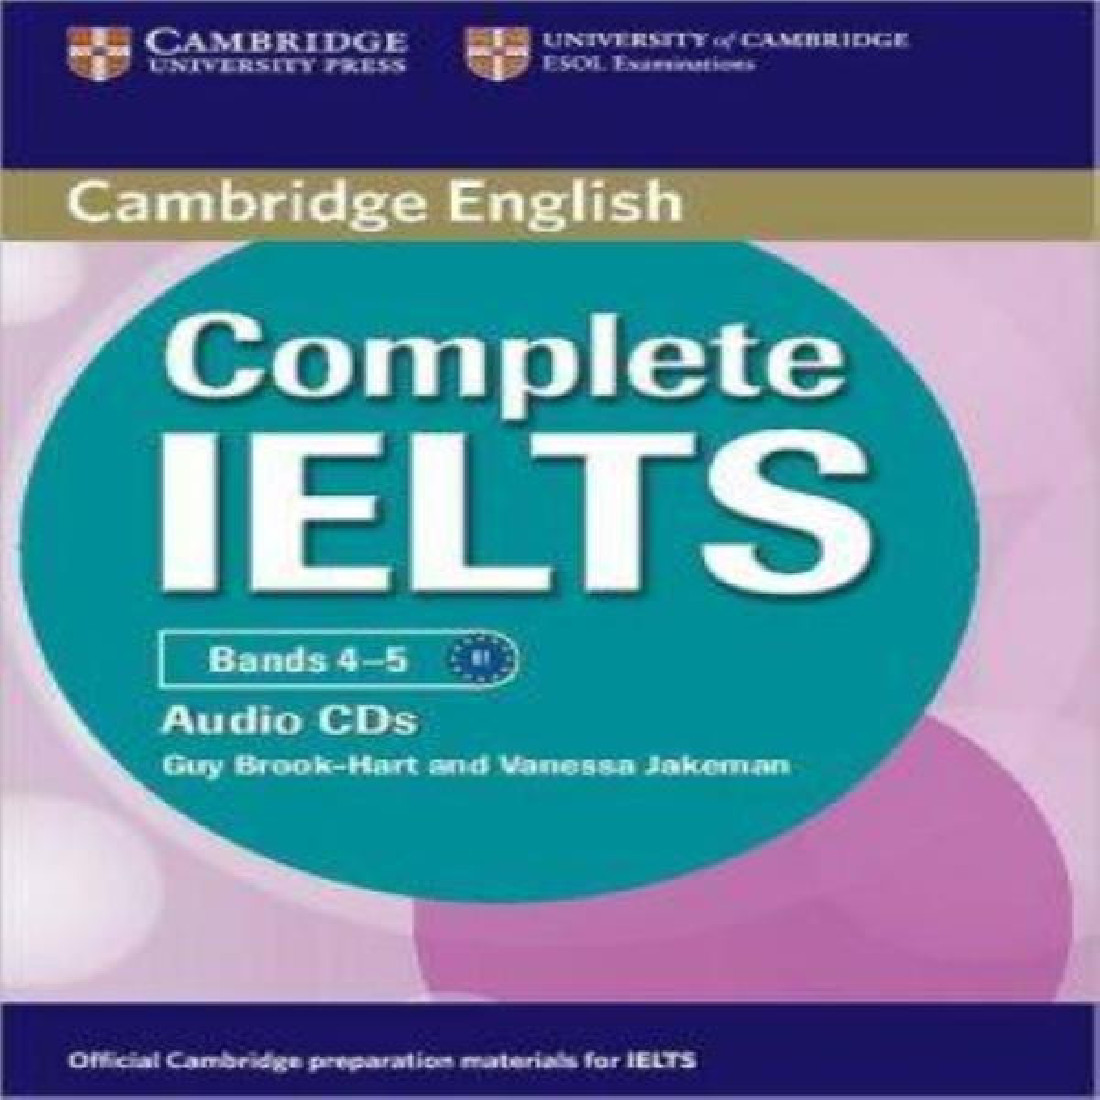 COMPLETE IELTS B1 CDs (2) (BAND 4-5)